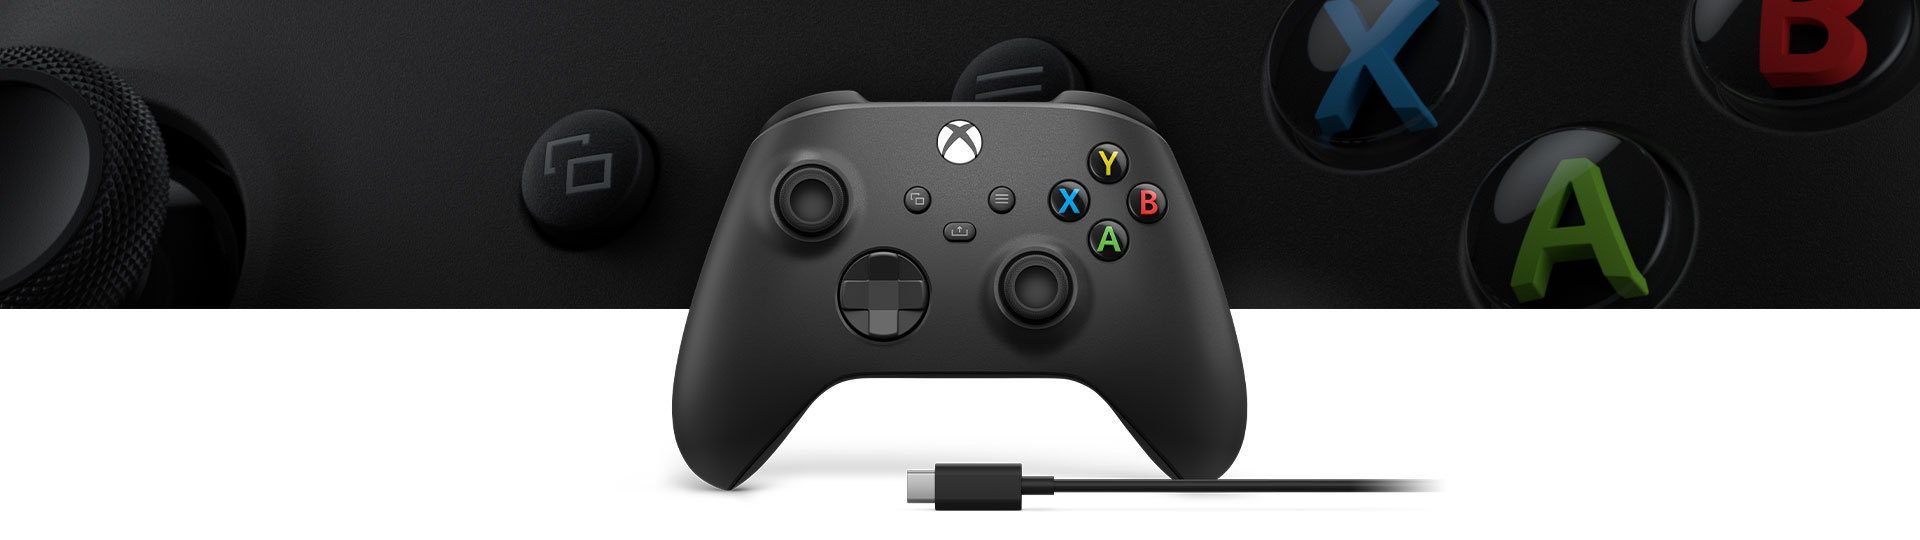 Controller Wireless per Xbox + cavo USB-C®, in primo piano la superficie del controller